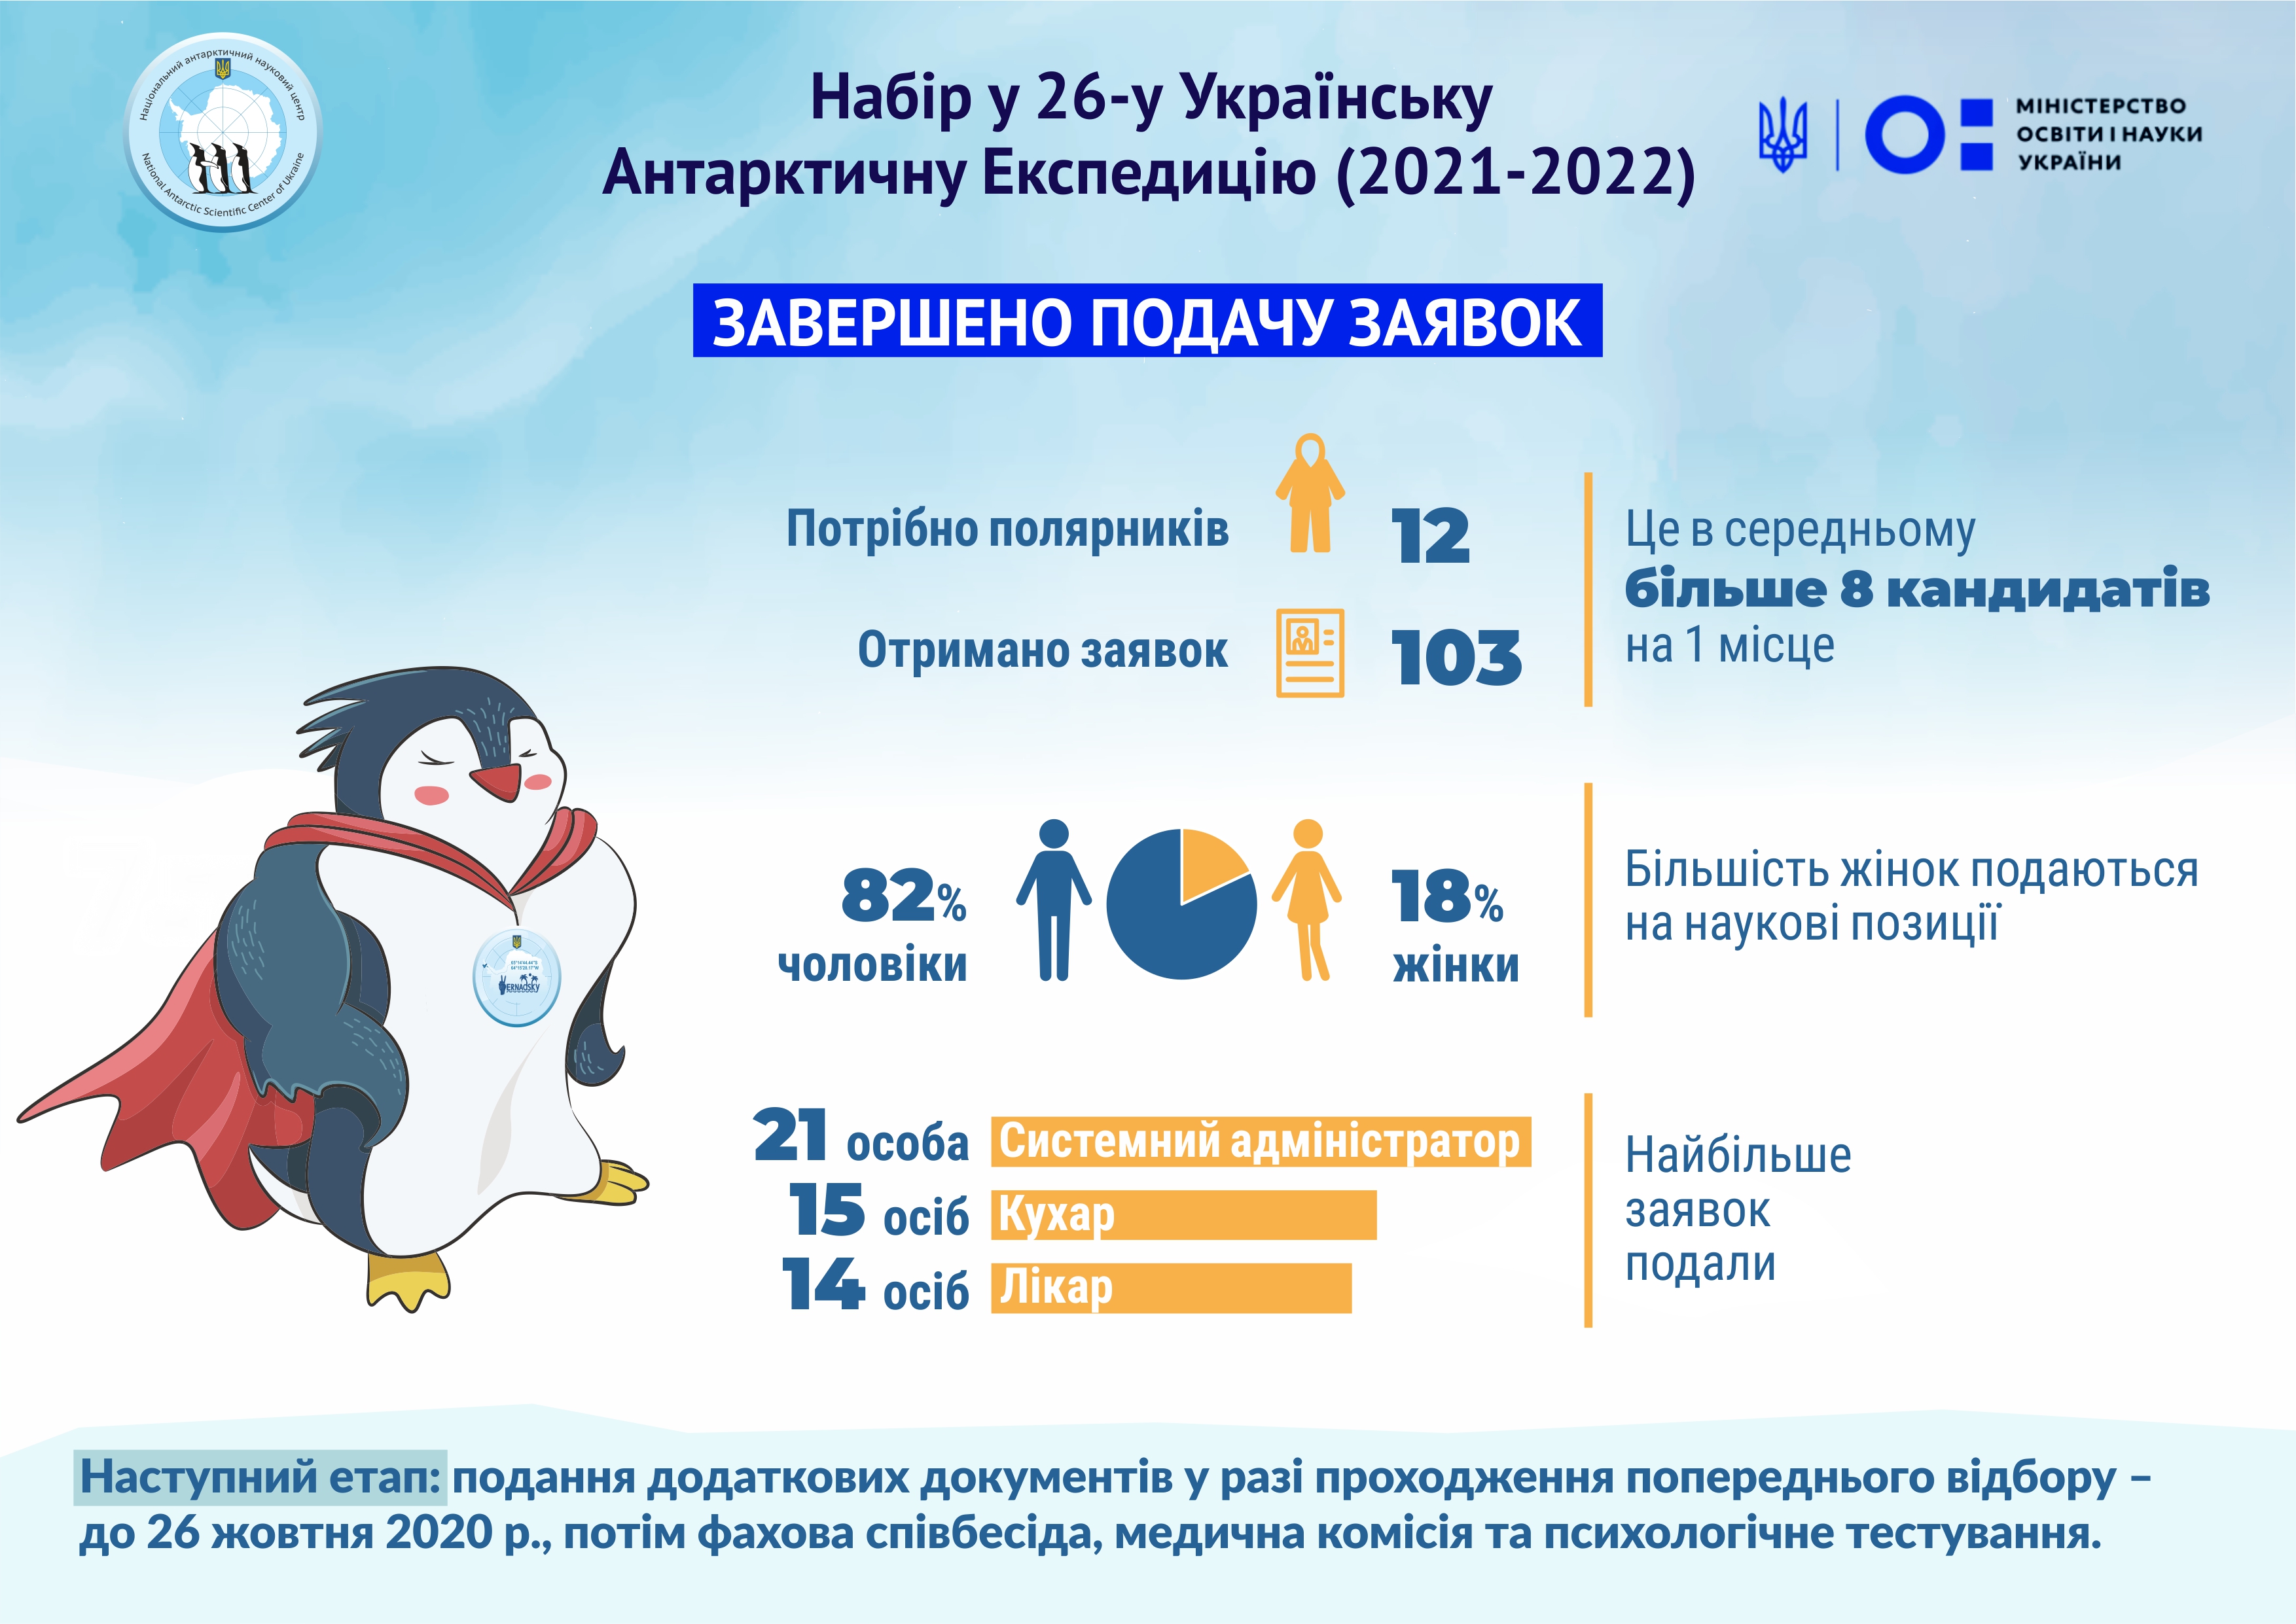 Количество желающих уехать в Антарктиду возросло|Новости Украины